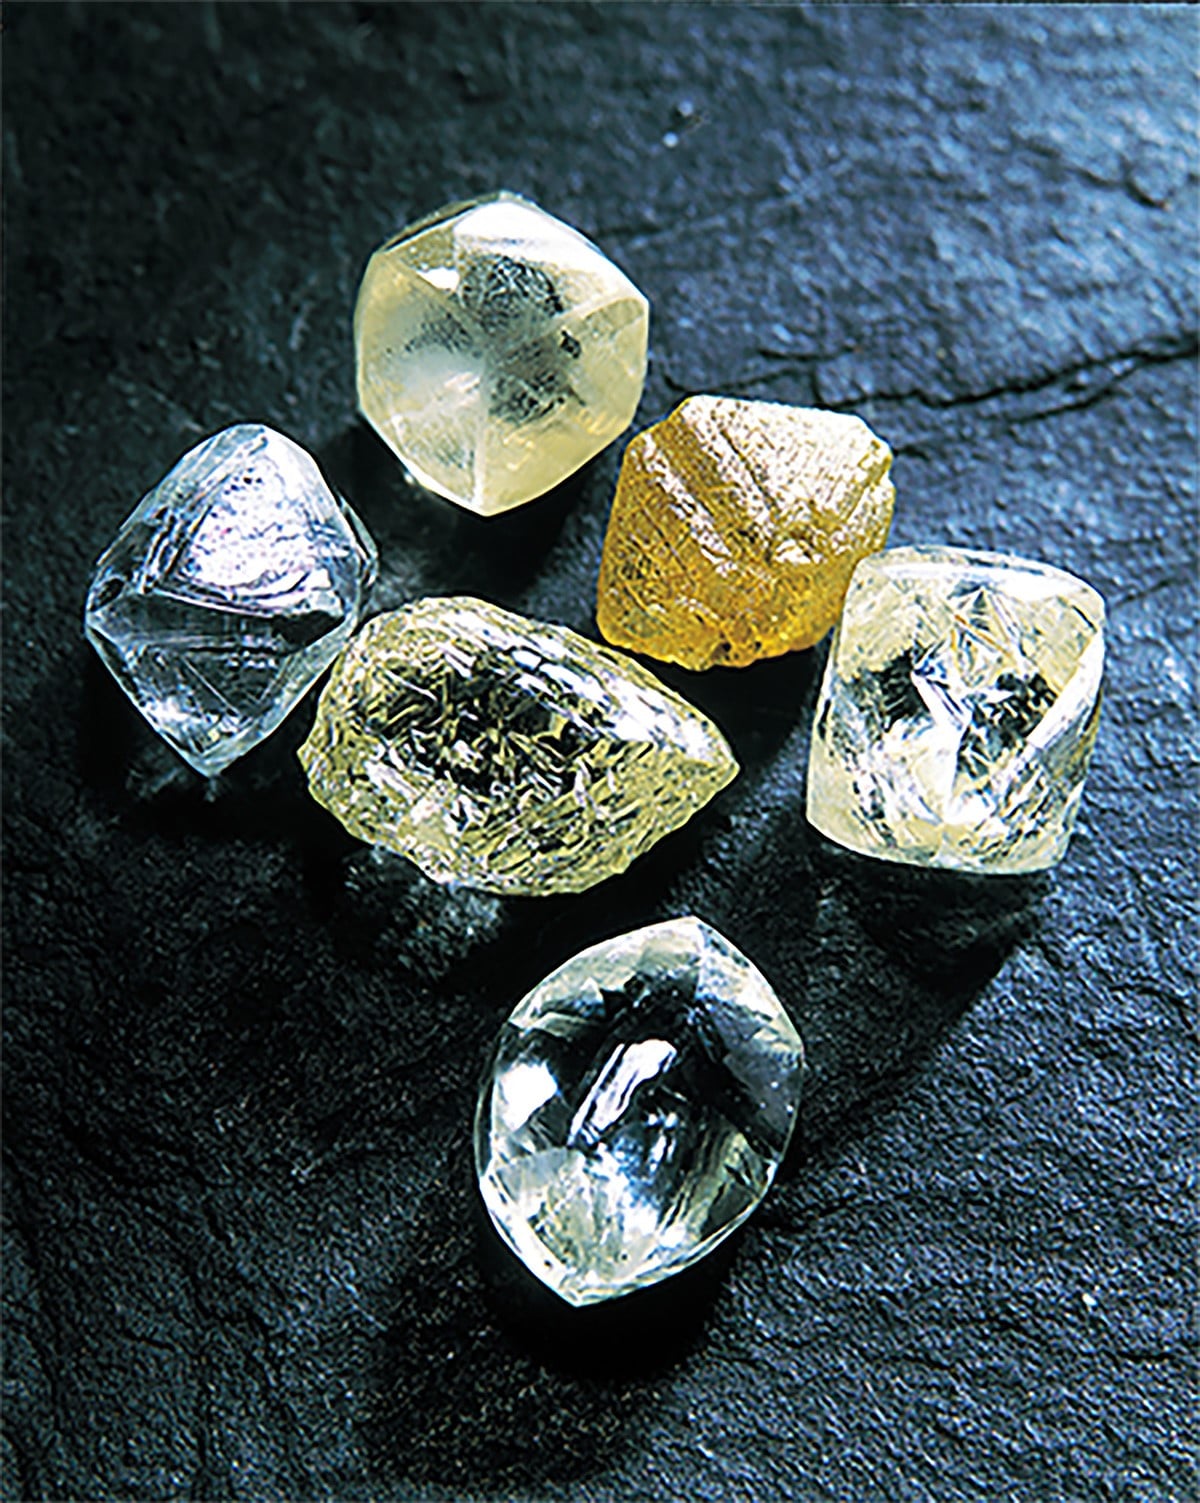 平时难得一见的原钻。即使未经切割、研磨，钻石原石的光辉依然美丽动人。